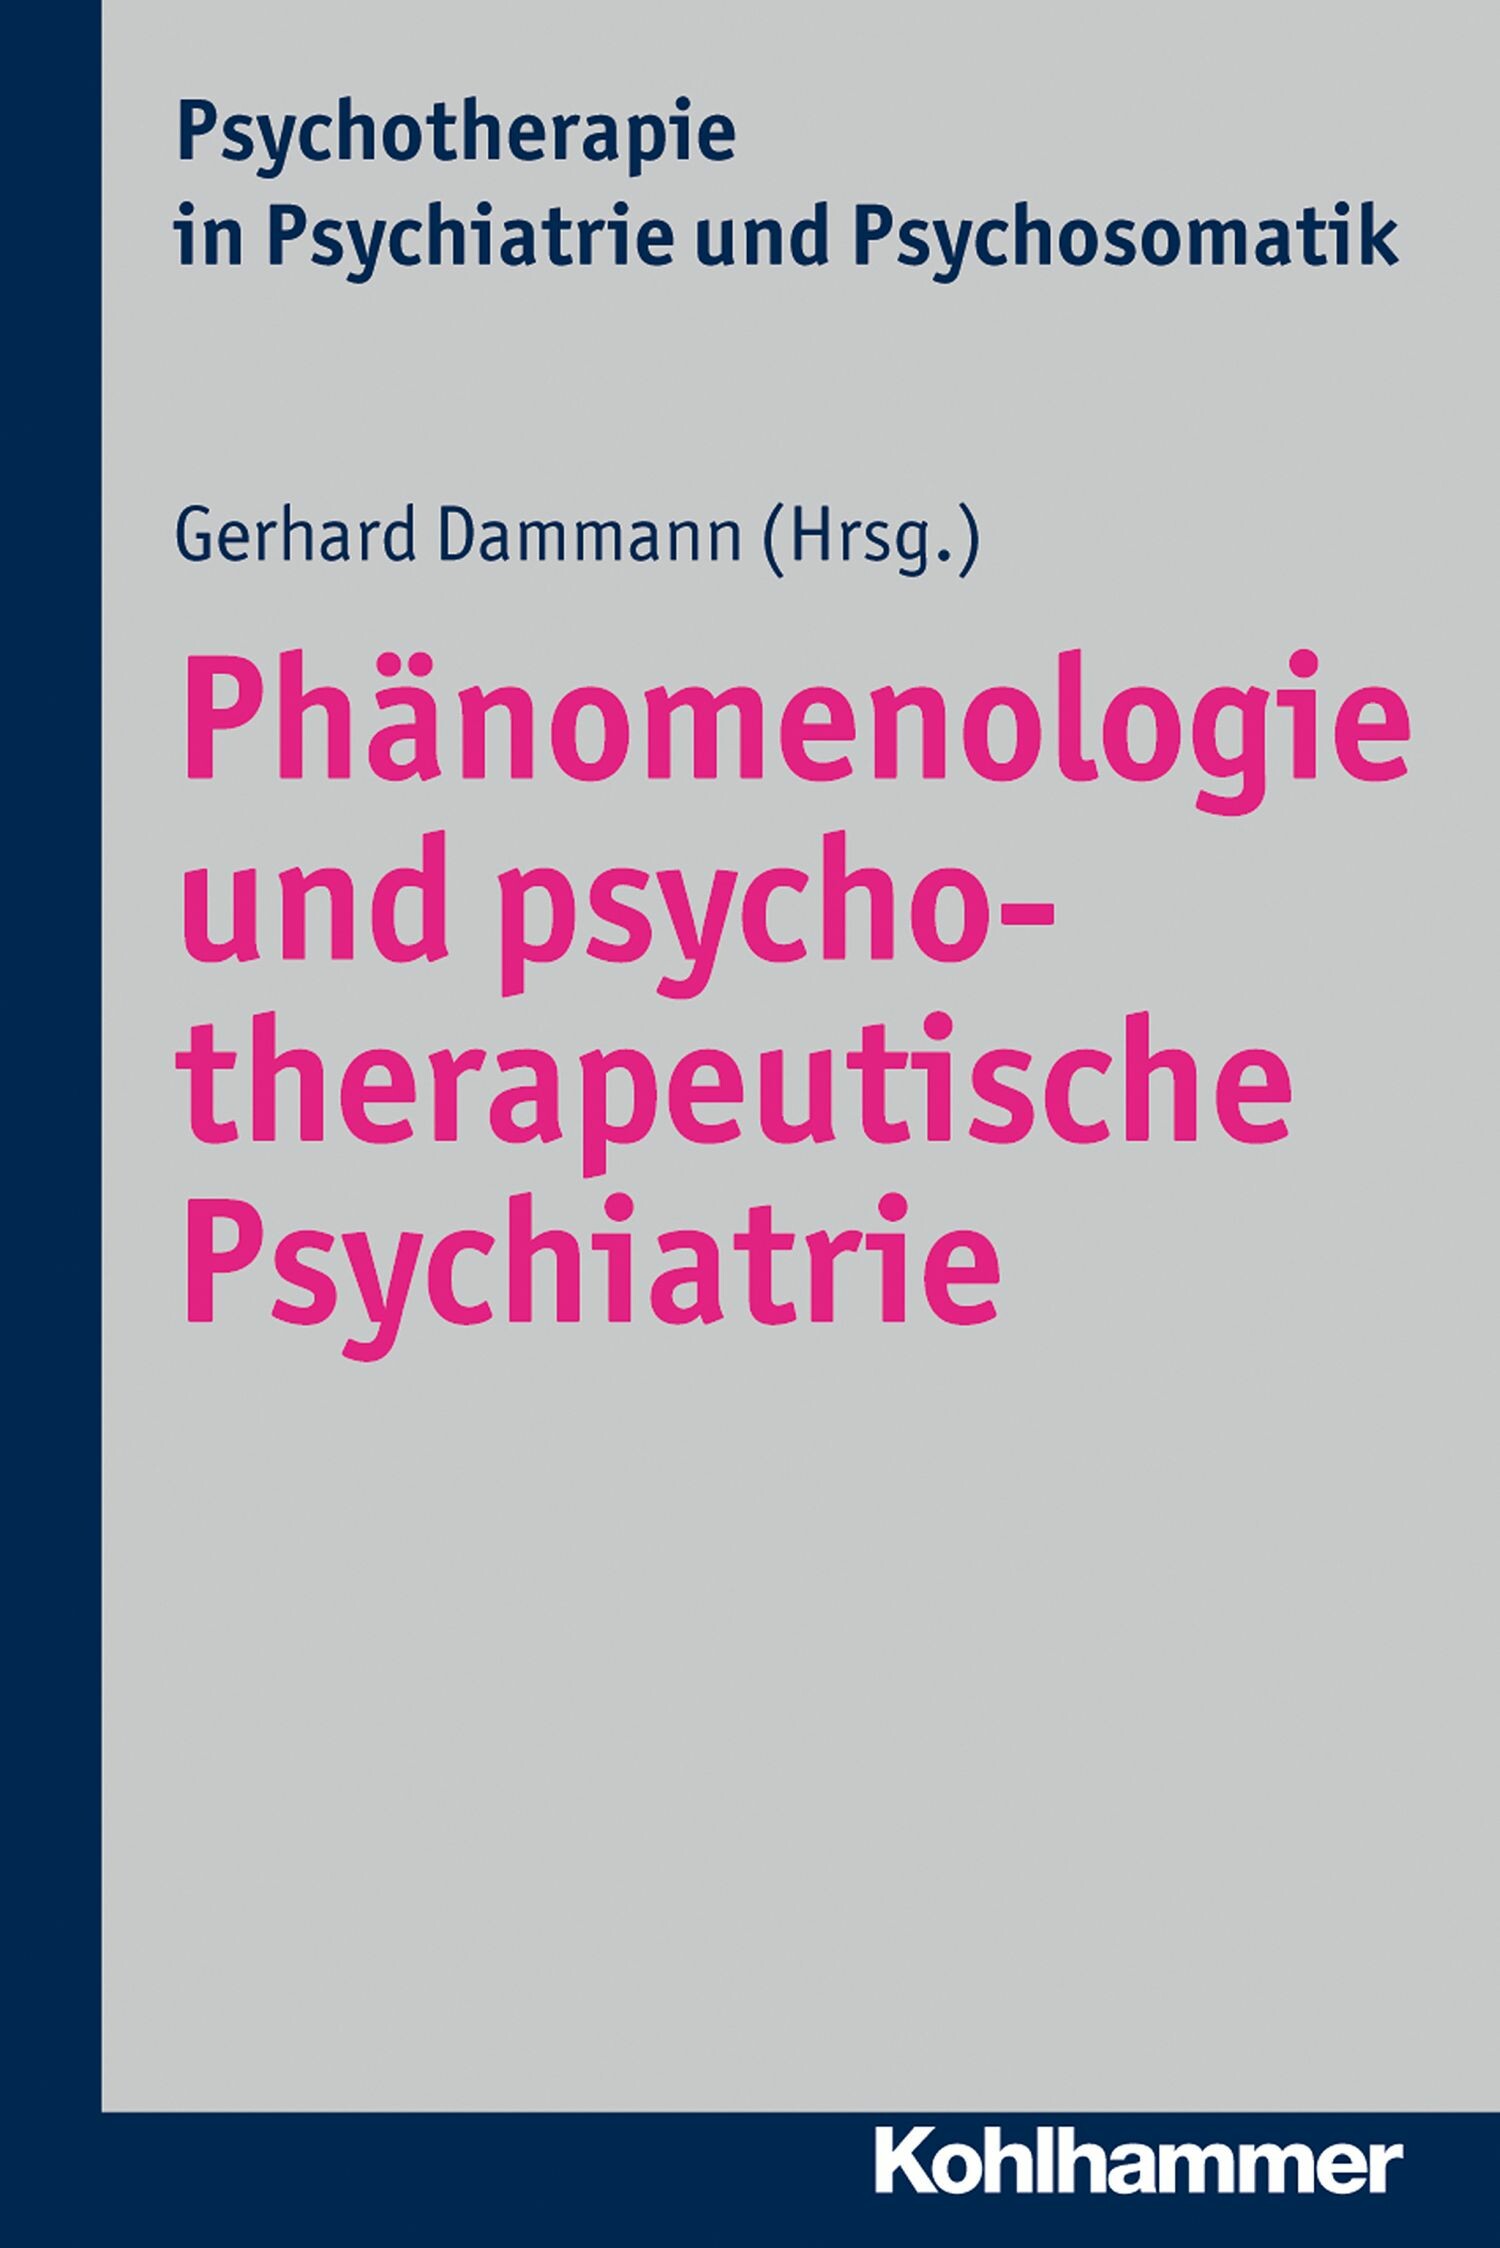 Phänomenologie und psychotherapeutische Psychiatrie